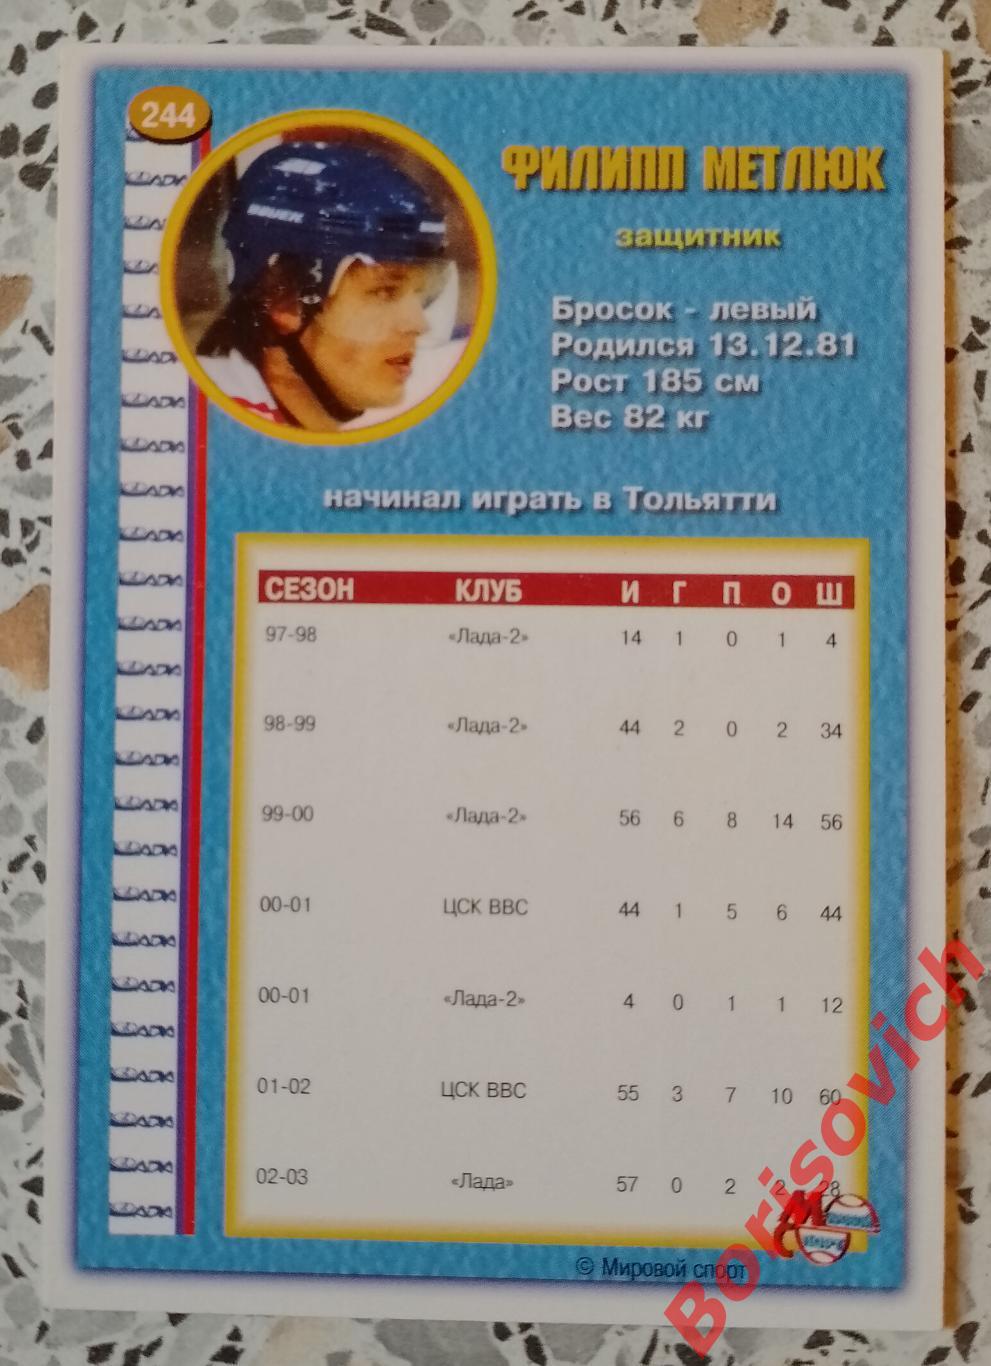 Карточка Филипп Метлюк Лада Тольятти Мировой спорт Российский хоккей 2003/2004 1